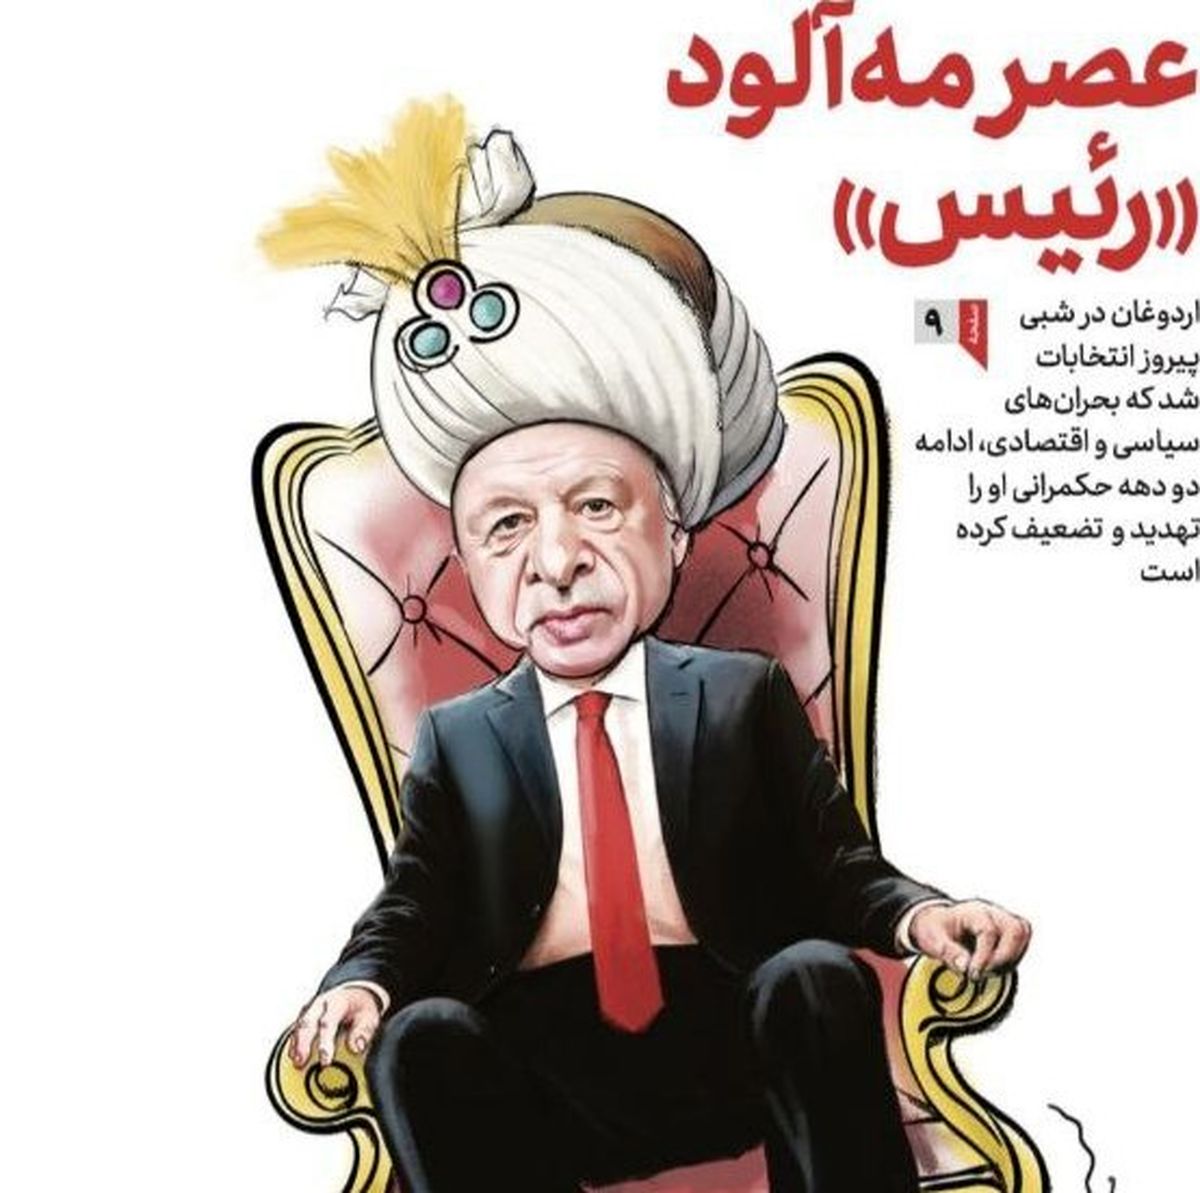 کاریکاتور اردوغان در روز پیروزی او در یک روزنامه دولتی